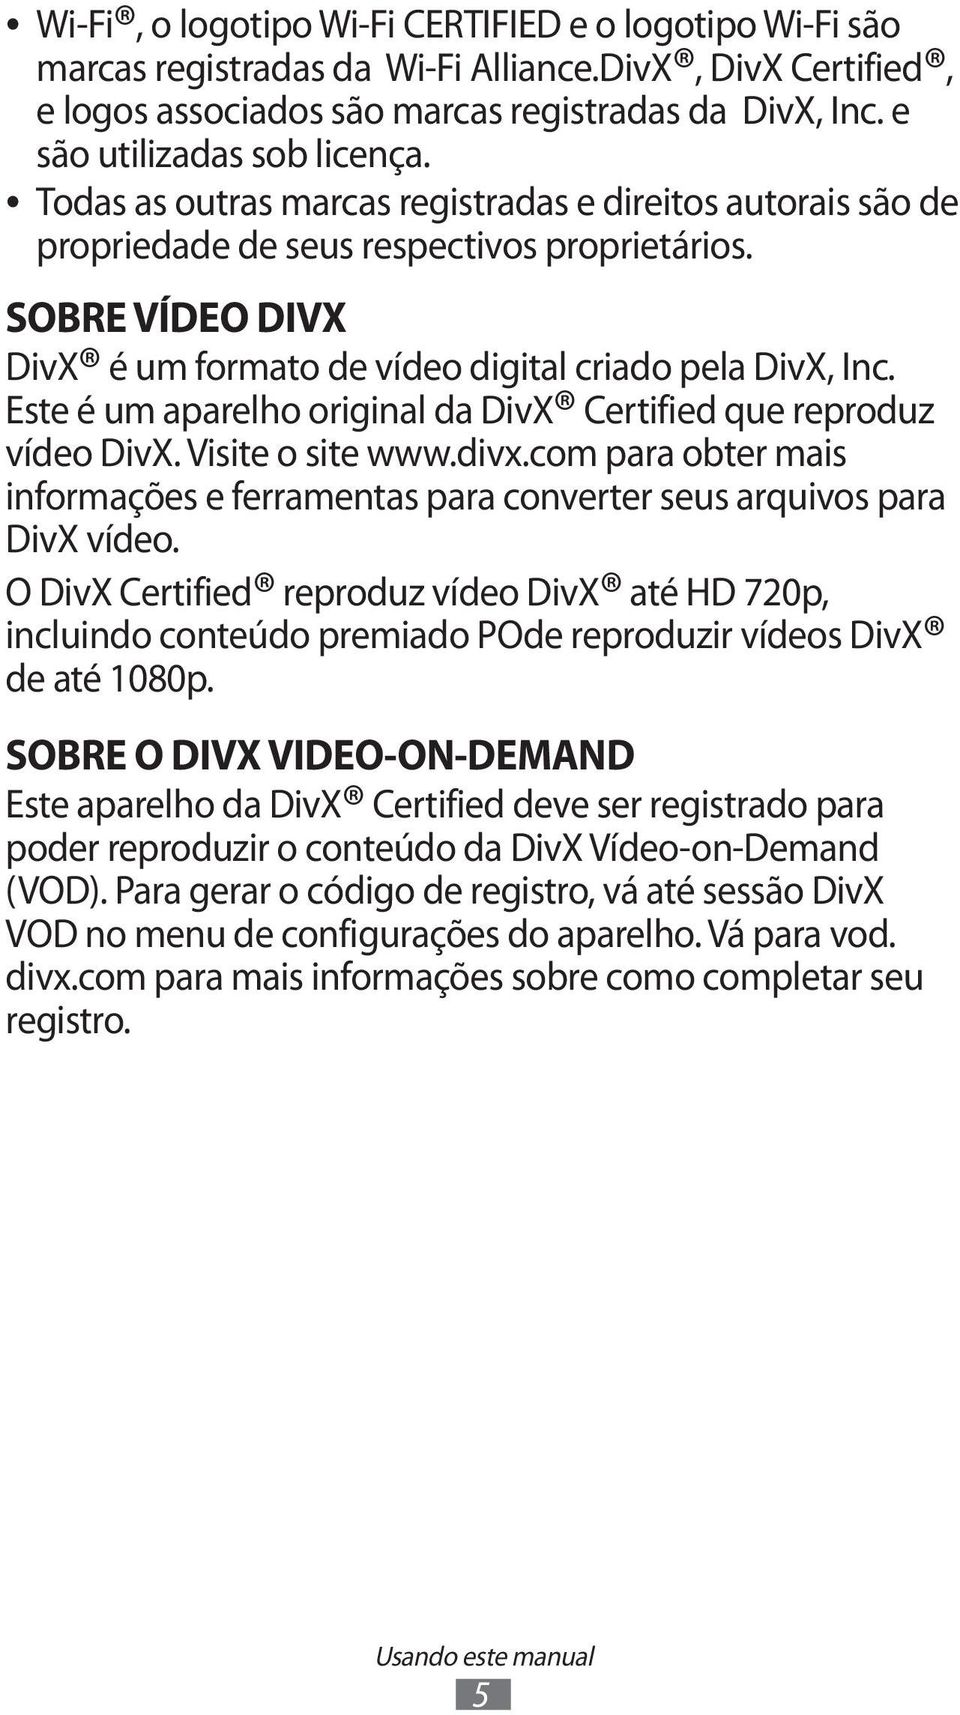 SOBRE VÍDEO DIVX DivX é um formato de vídeo digital criado pela DivX, Inc. Este é um aparelho original da DivX Certified que reproduz vídeo DivX. Visite o site www.divx.